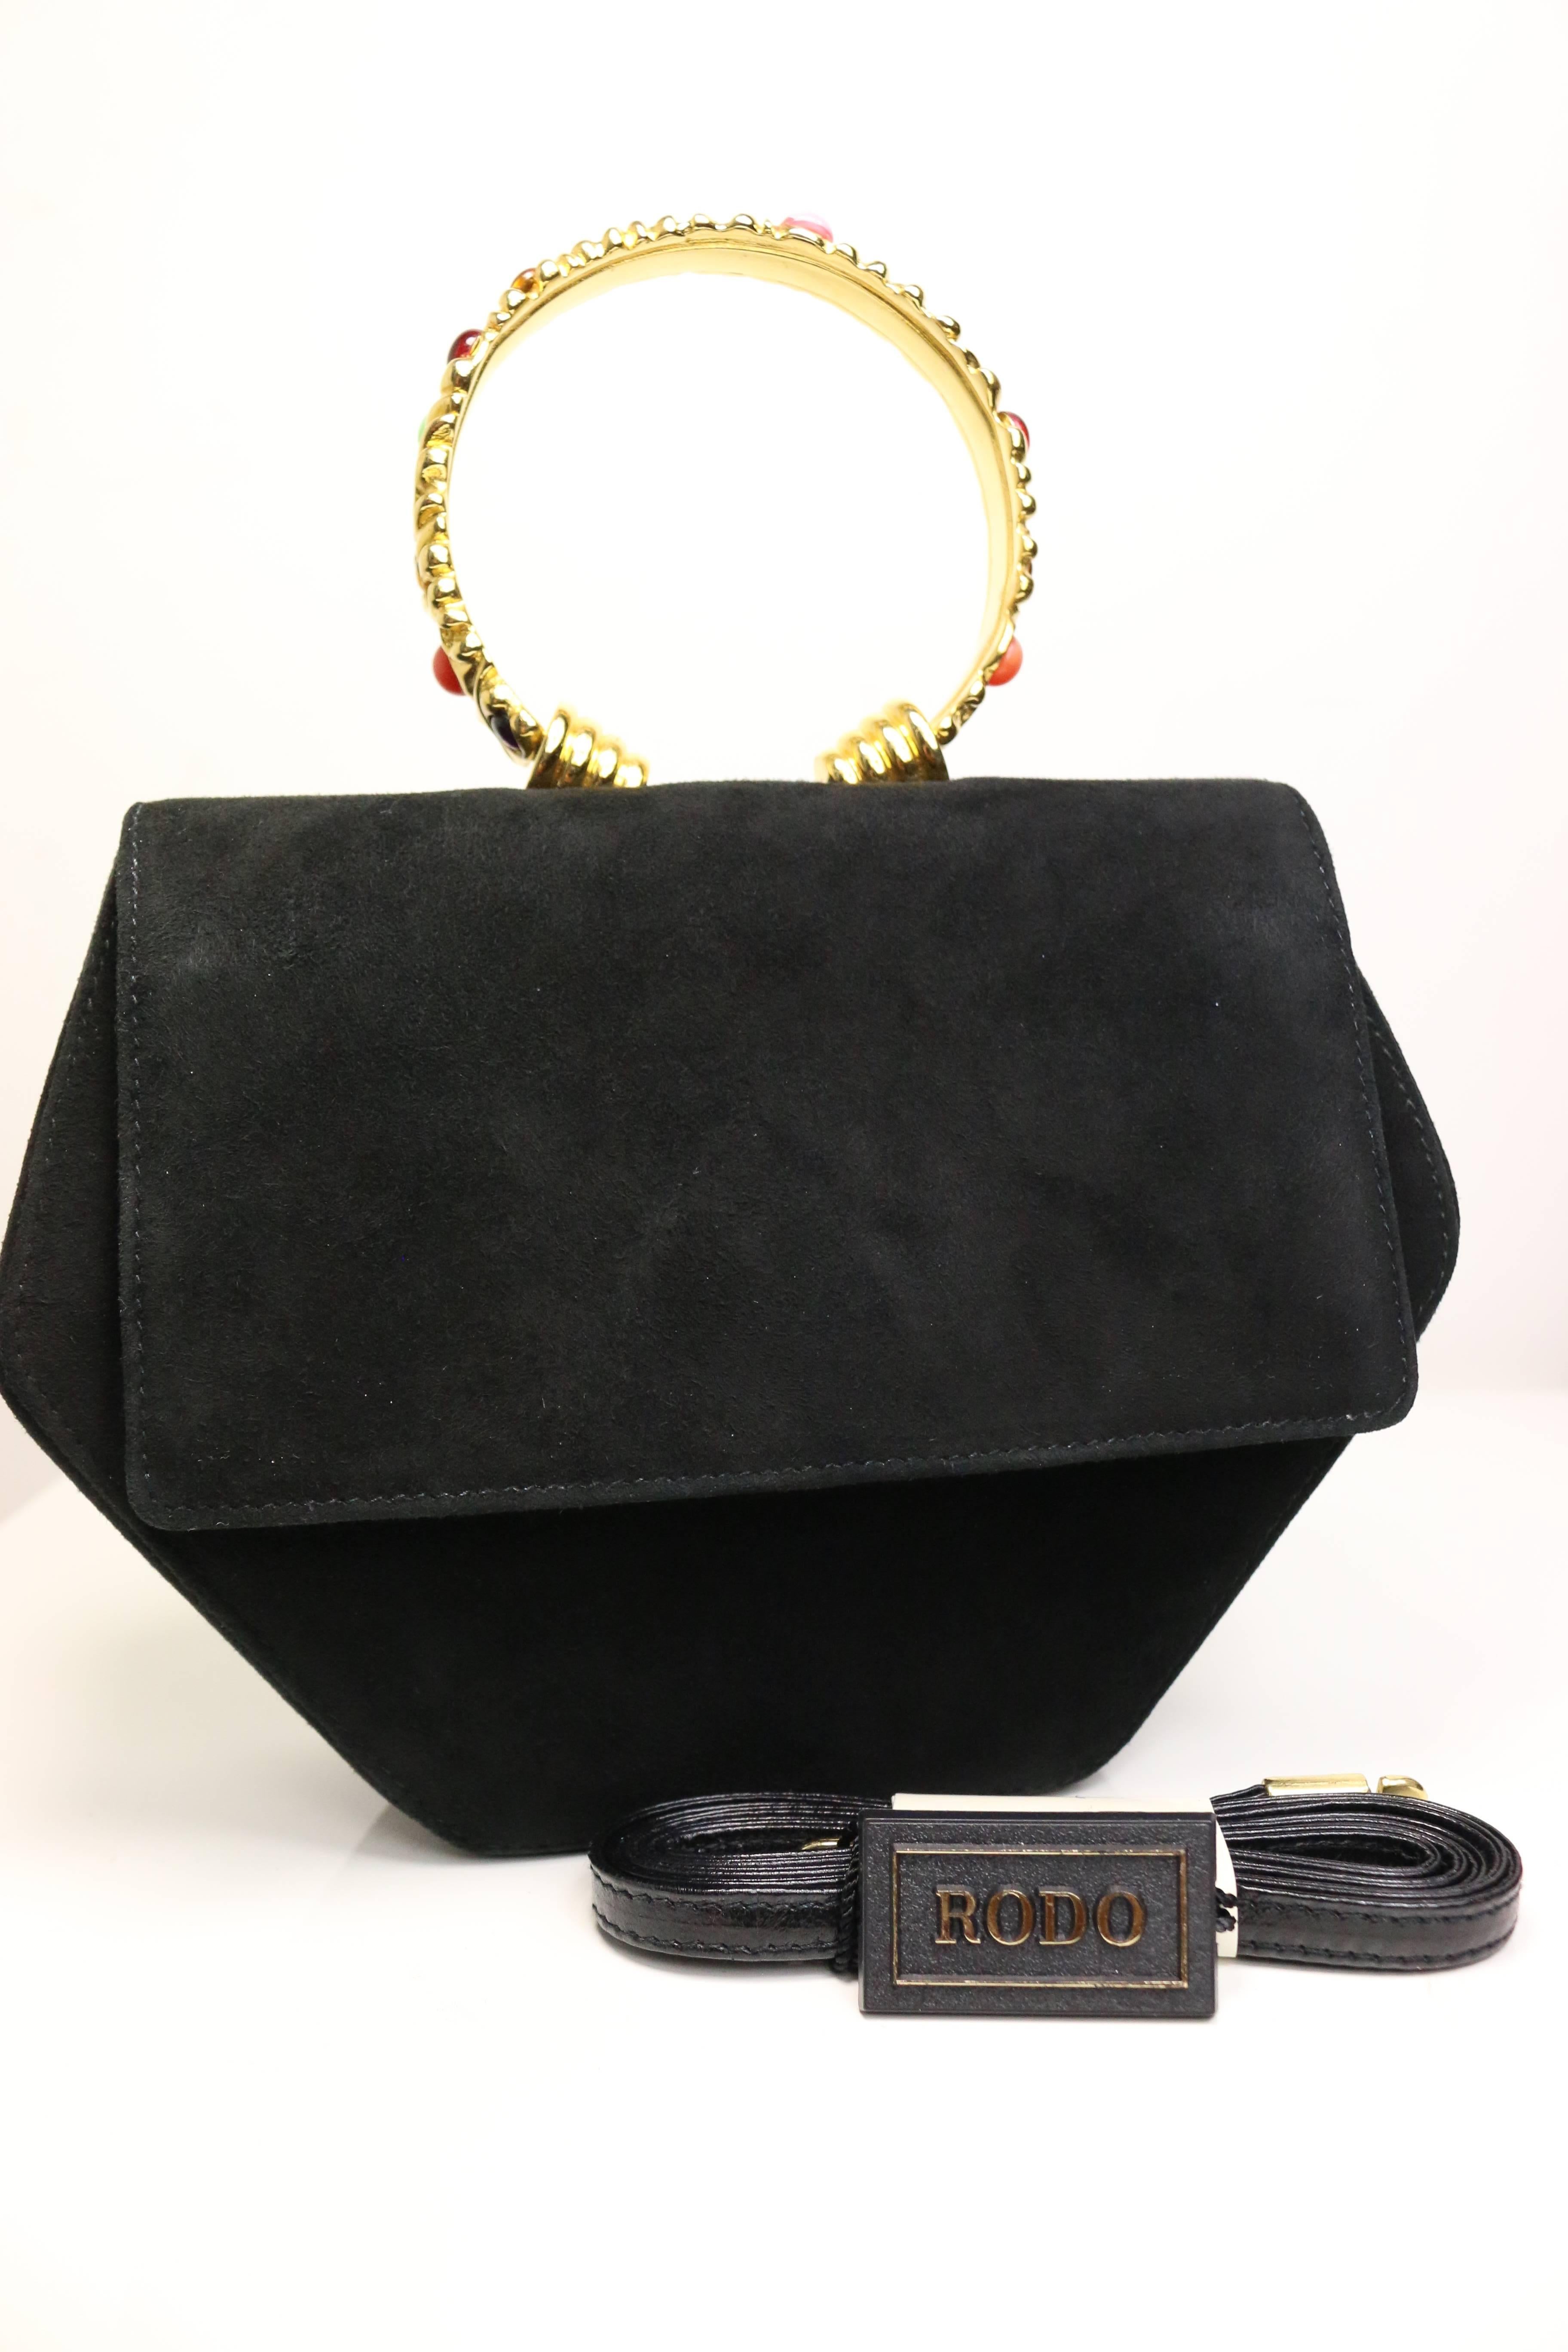 Rodo Black Suede Gold Toned Handle Octagon Handbag with Strap  2